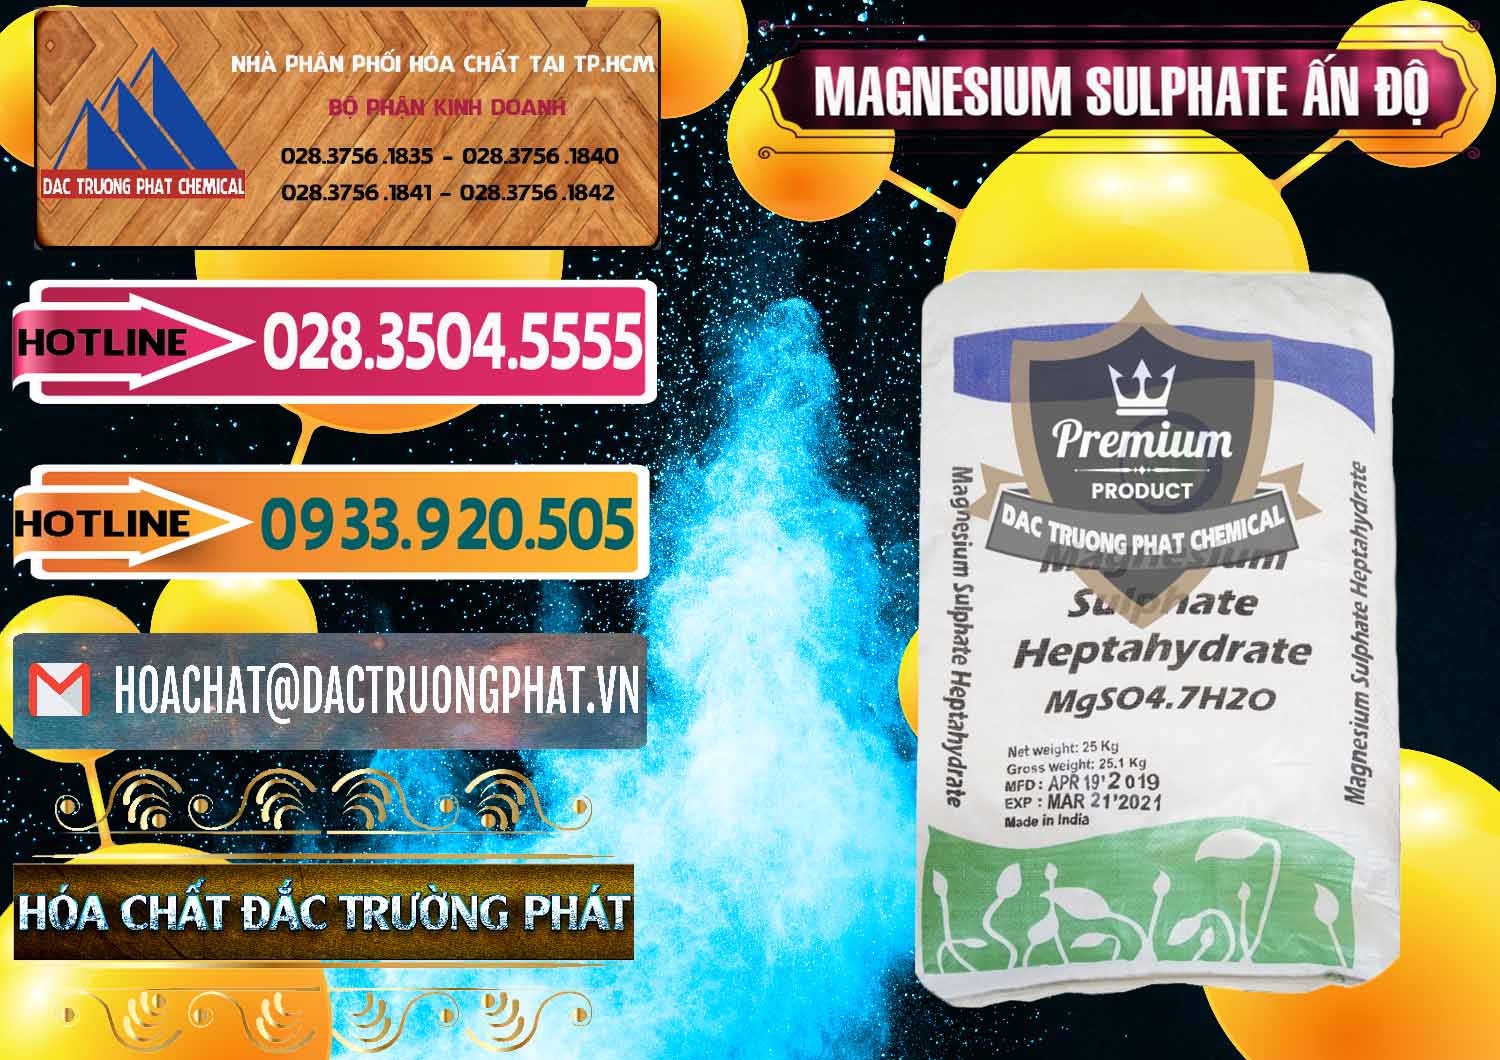 Công ty kinh doanh & bán MGSO4.7H2O – Magnesium Sulphate Heptahydrate Ấn Độ India - 0362 - Đơn vị chuyên nhập khẩu _ cung cấp hóa chất tại TP.HCM - dactruongphat.vn